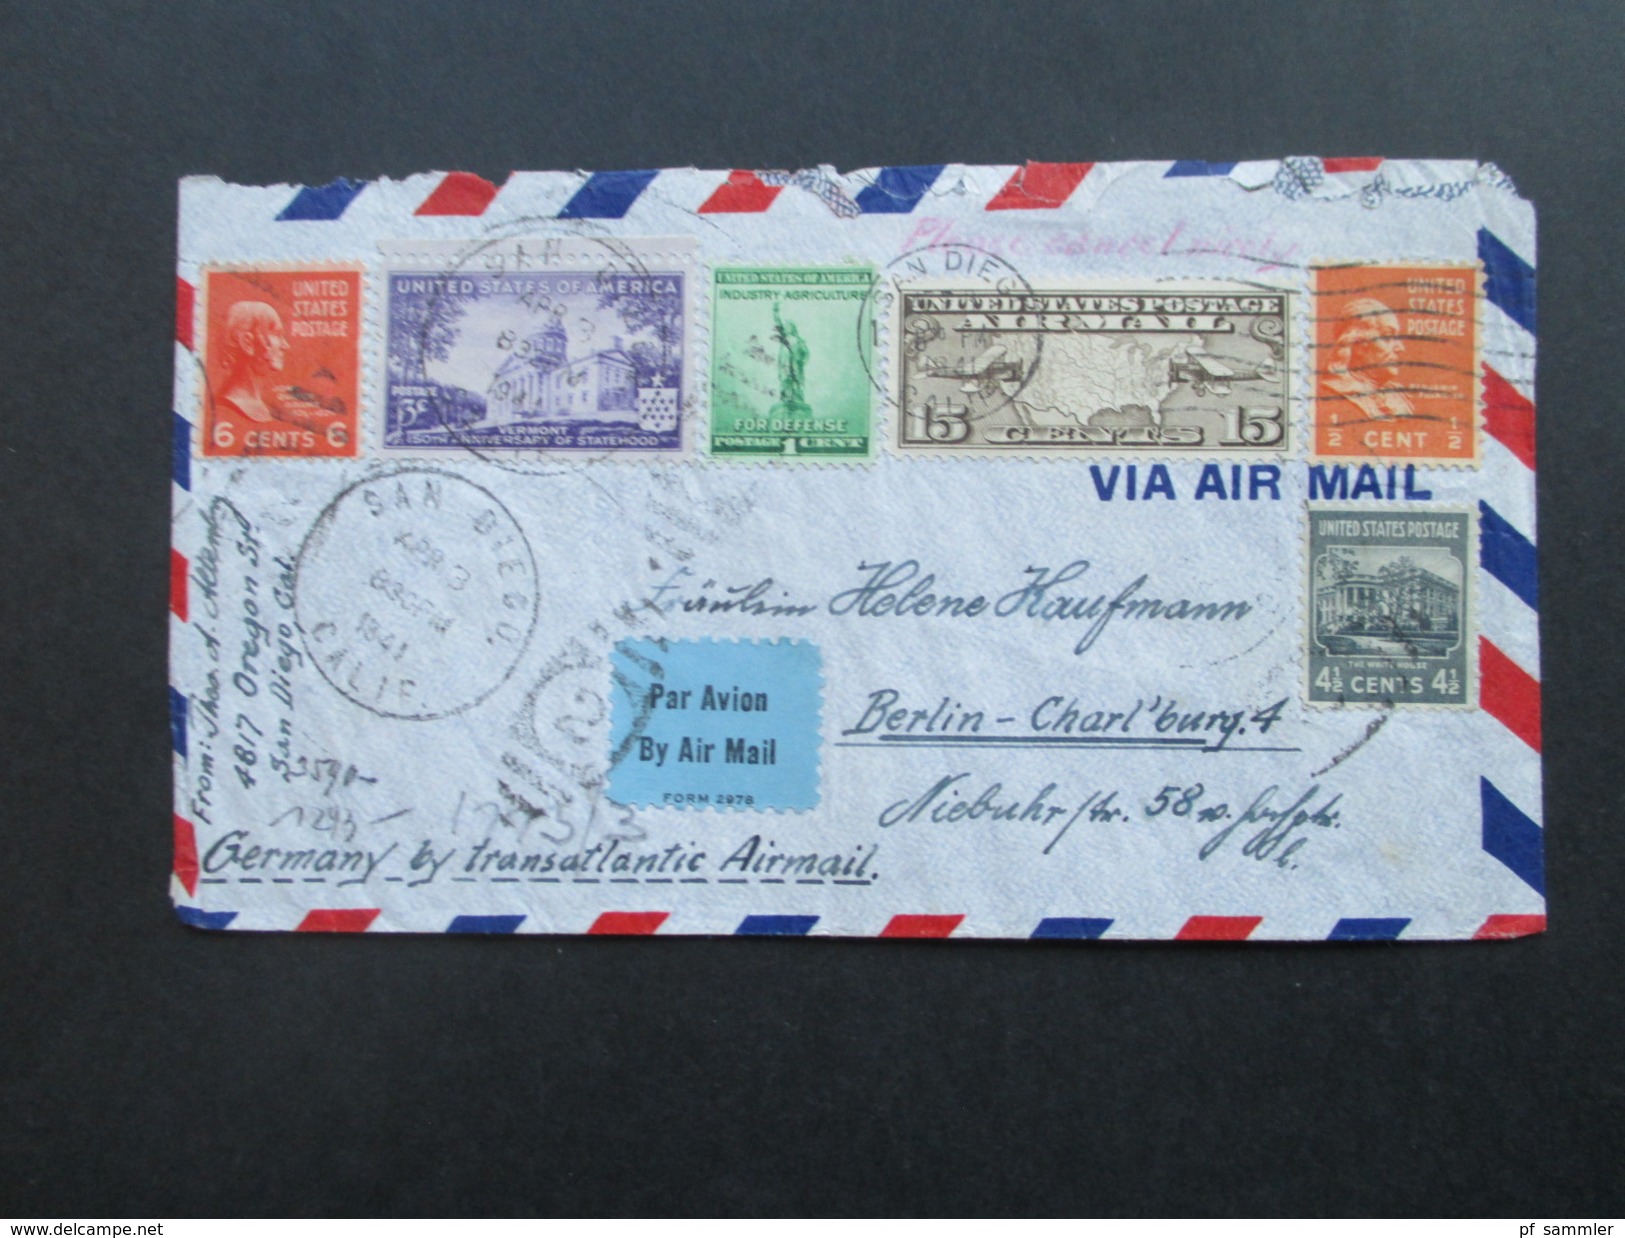 USA 1941 By Transatlantic Airmail. San Diego - Berlin. 3-fach Zensur. Geöffnet Oberkommando Der Wehrmacht. Zensurpost - Lettres & Documents